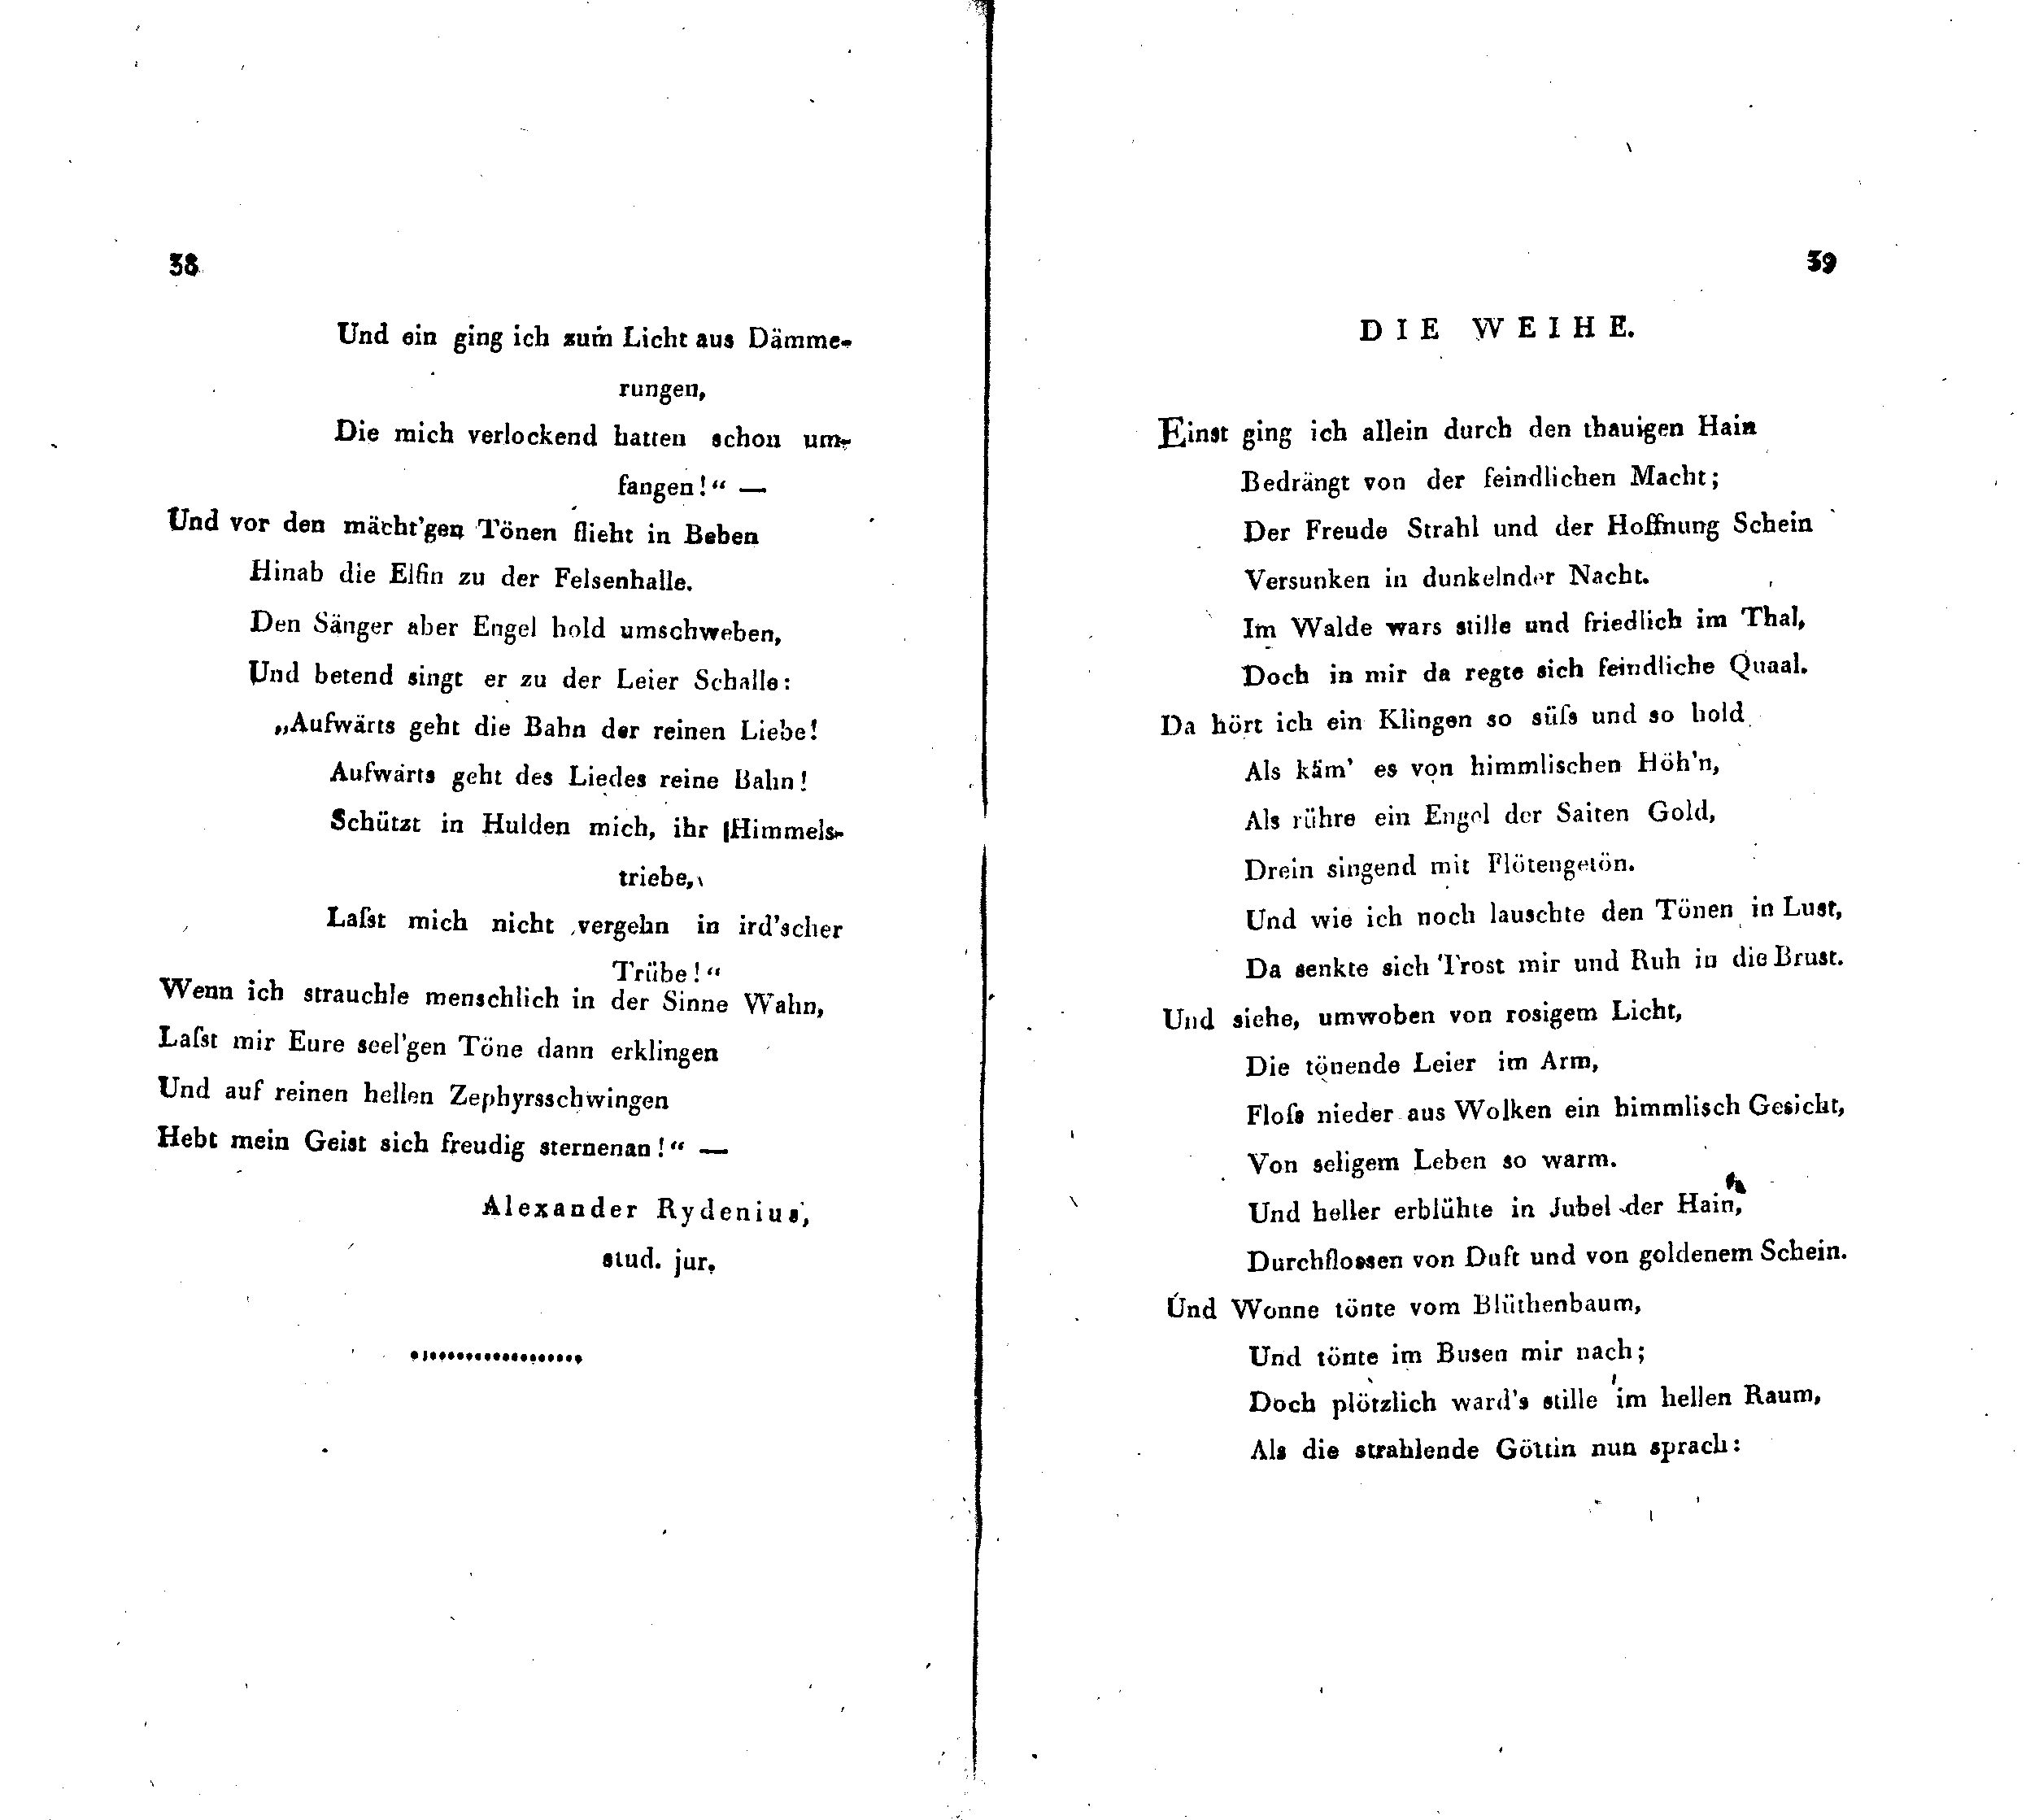 Die Weihe (1820) | 1. (38-39) Main body of text